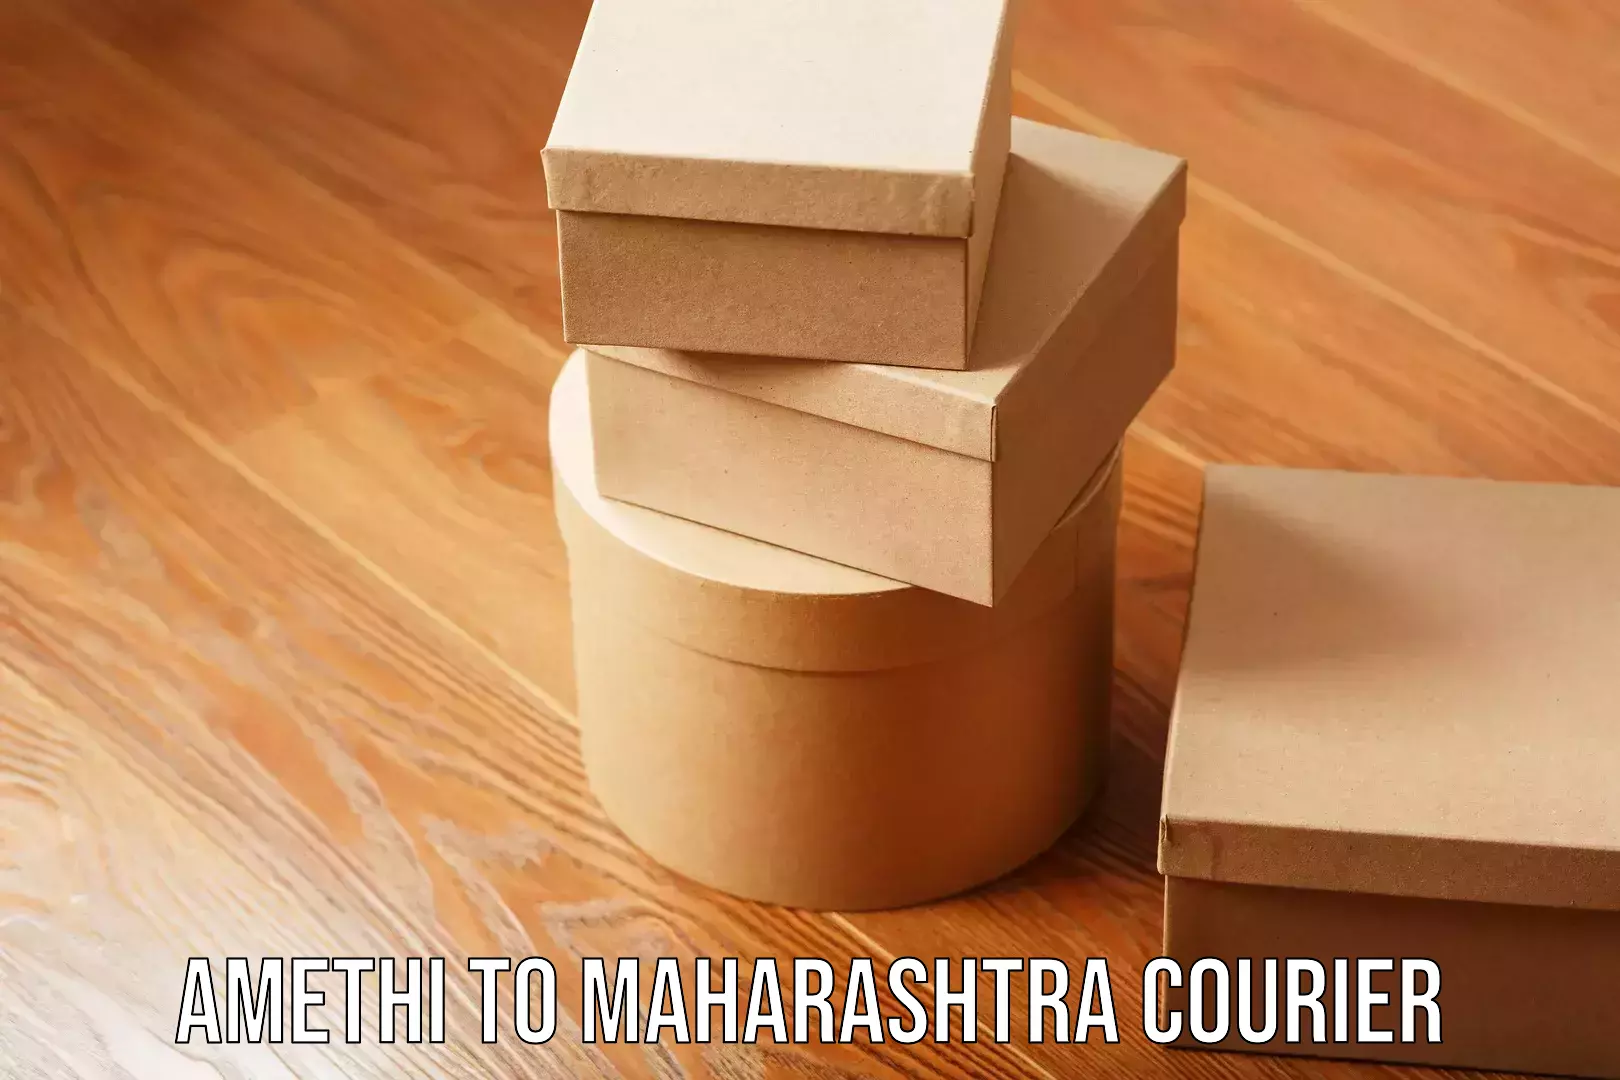 Speedy delivery service Amethi to Maharashtra